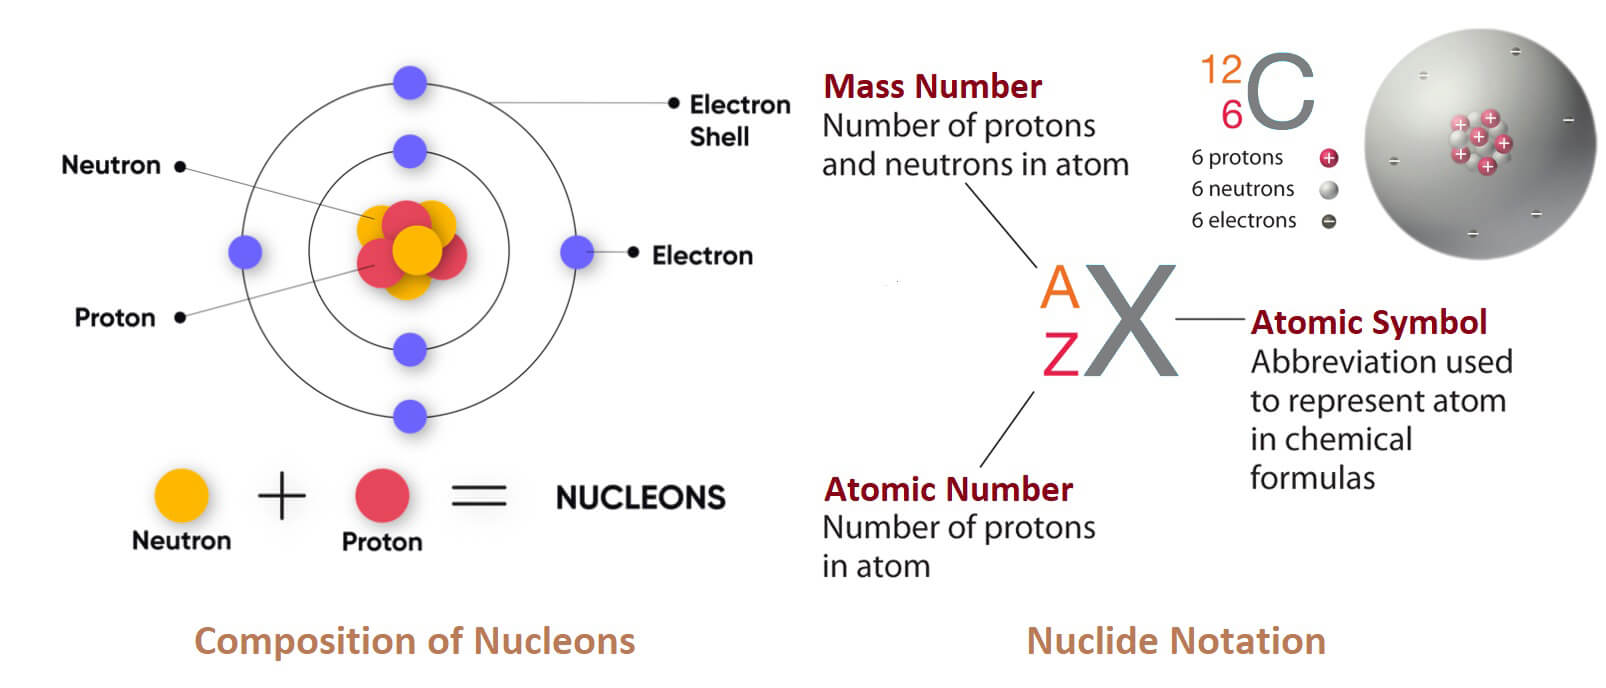 neutron proton nucleons nuclide notation